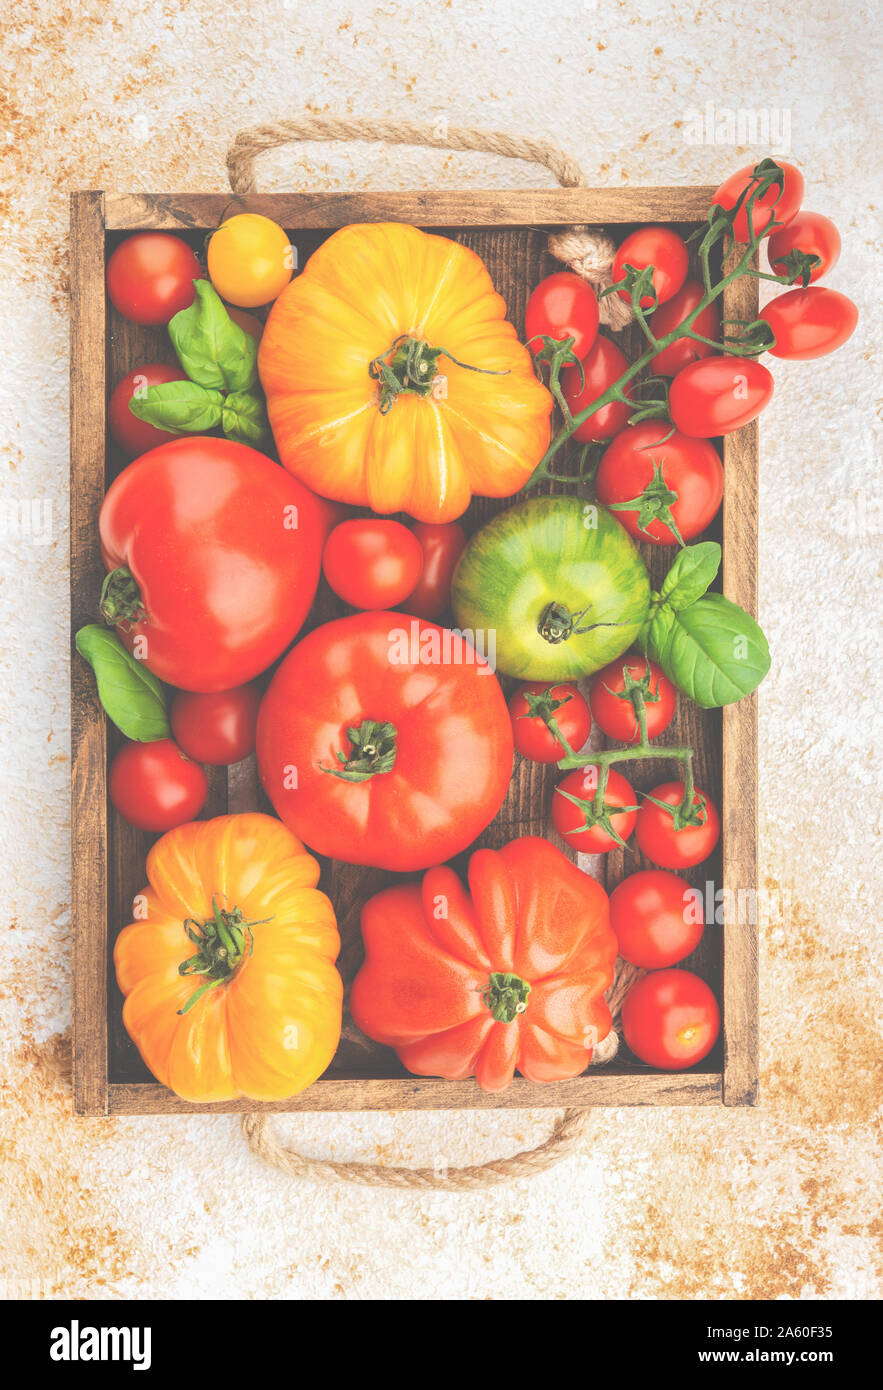 Grosses petites tomates en boîte Banque D'Images